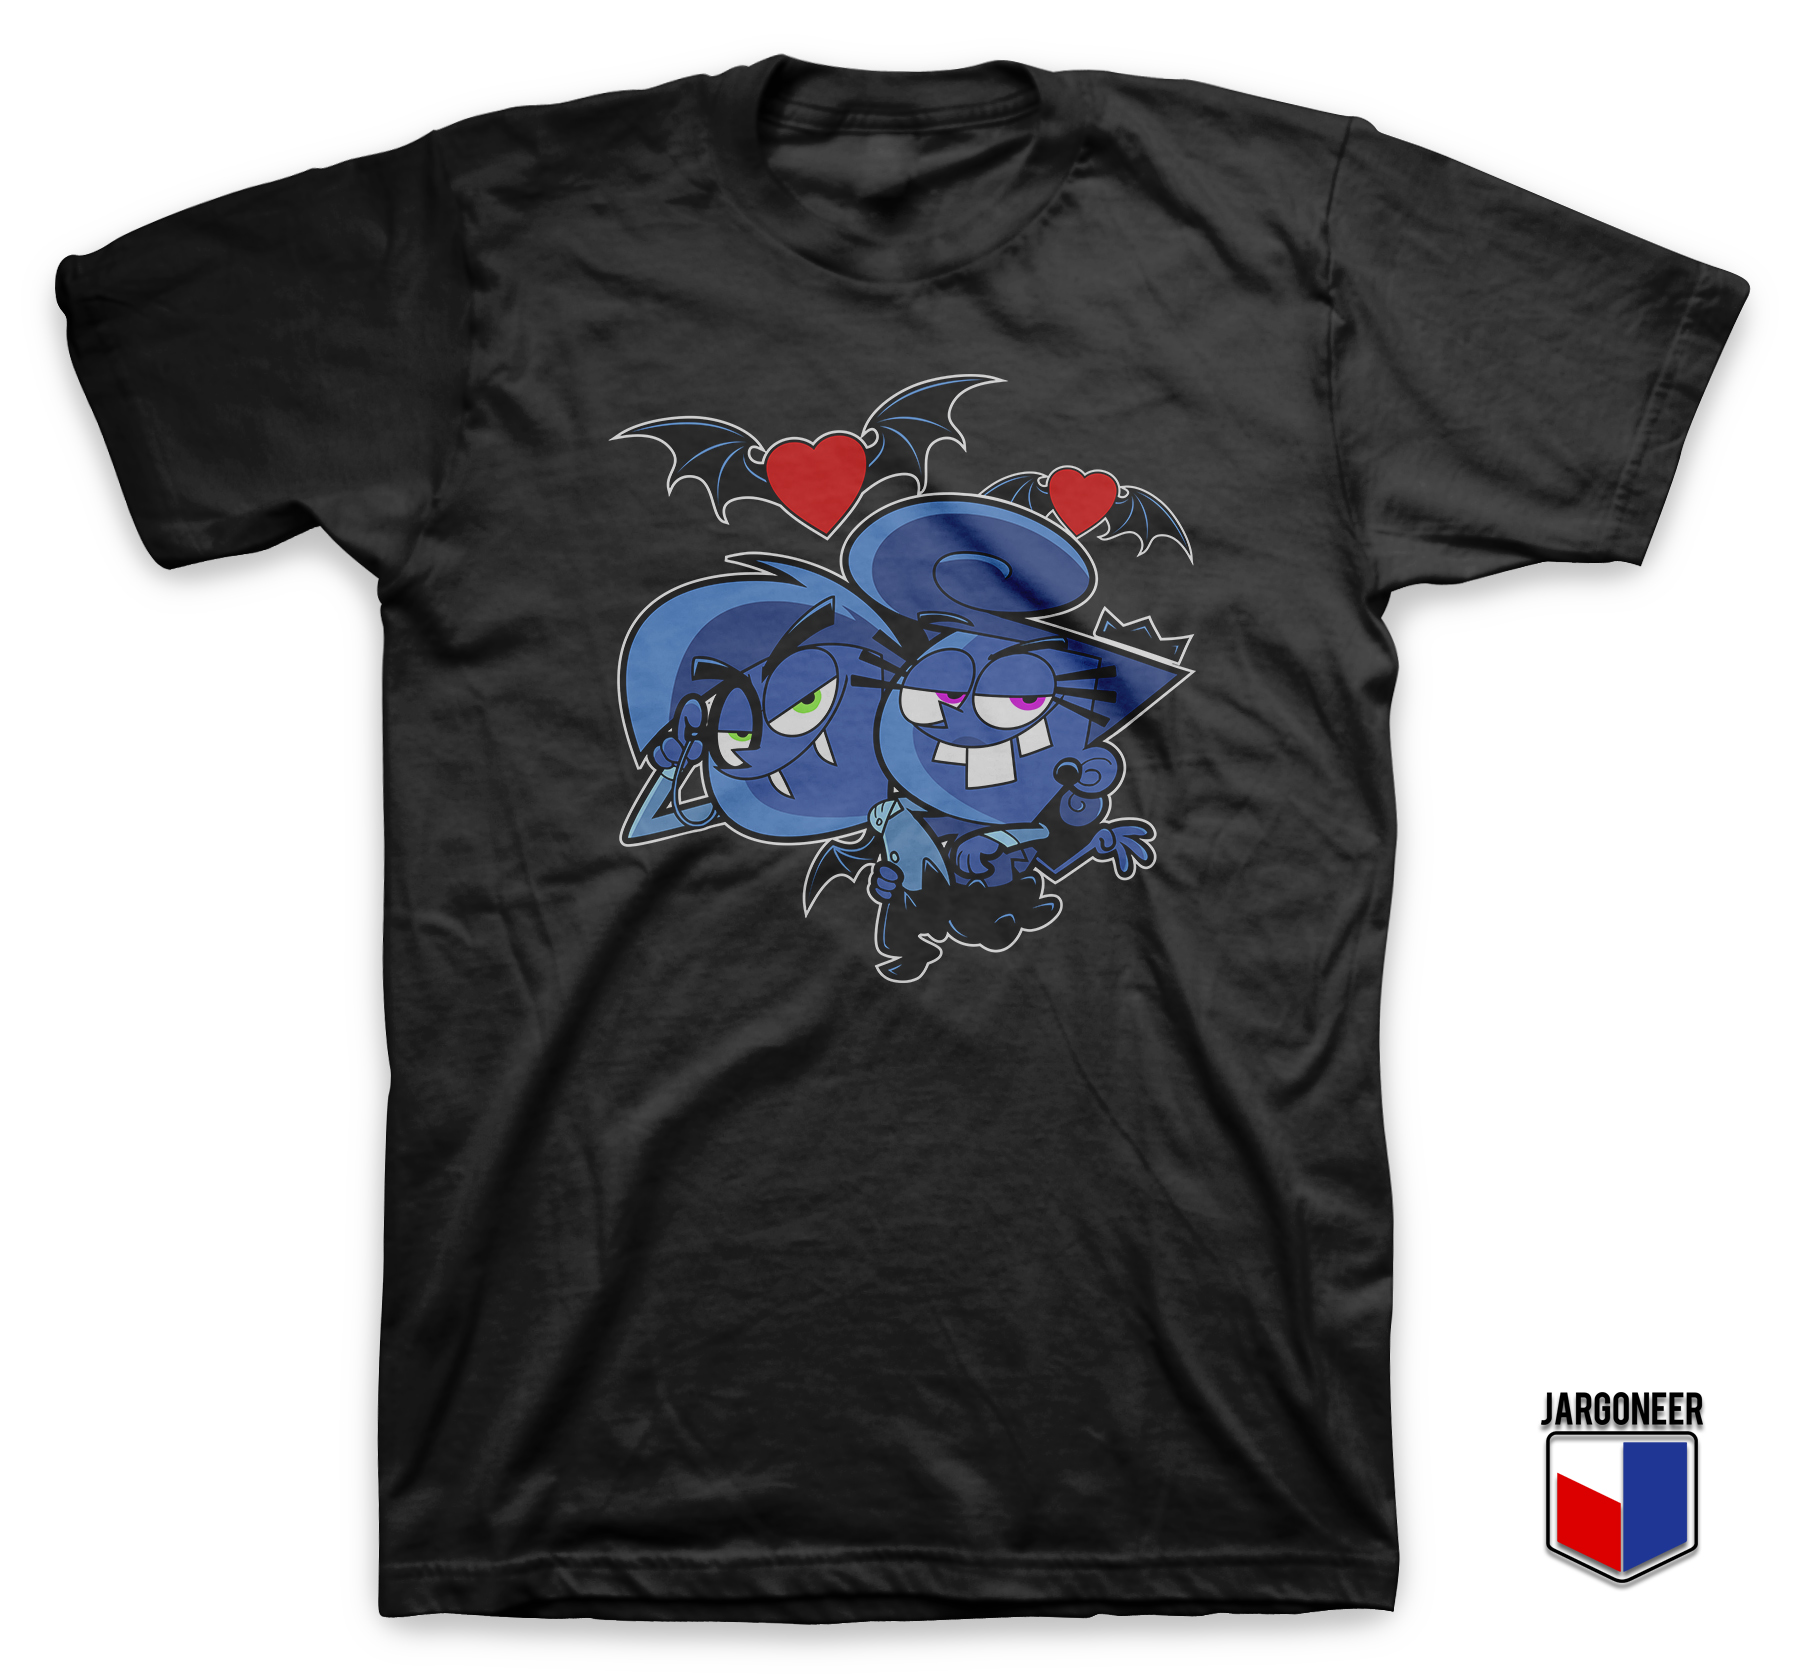 Evil In Love Black T Shirt - Shop Unique Graphic Cool Shirt Designs